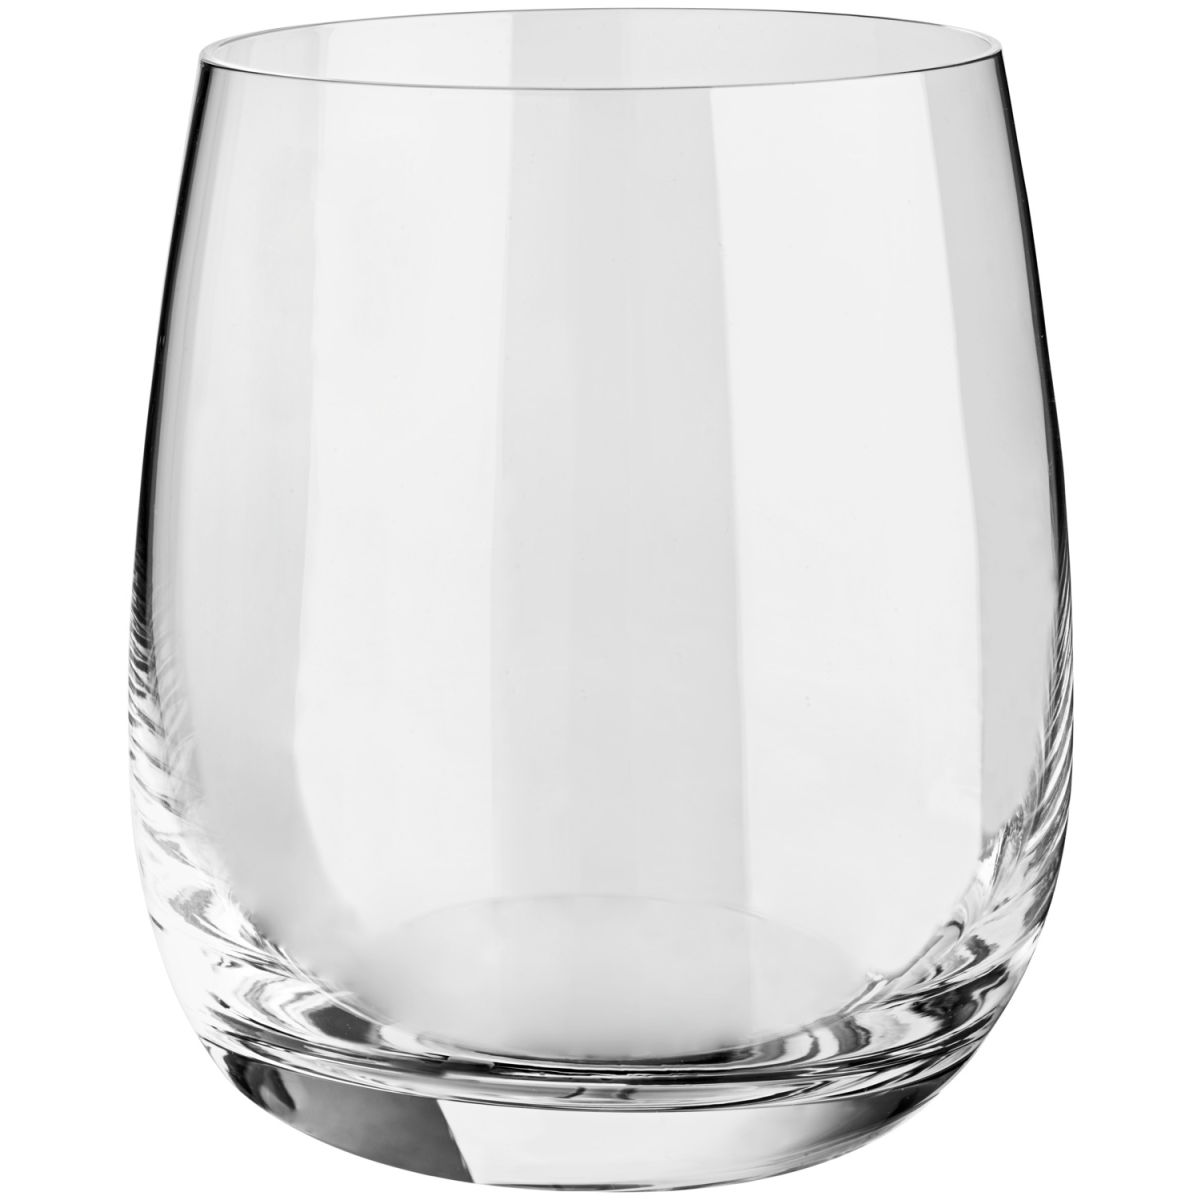 Vega Universeel glas Theresa; 460ml, 7.5x10.5 cm (ØxH); transparant; 6 stuk / verpakking